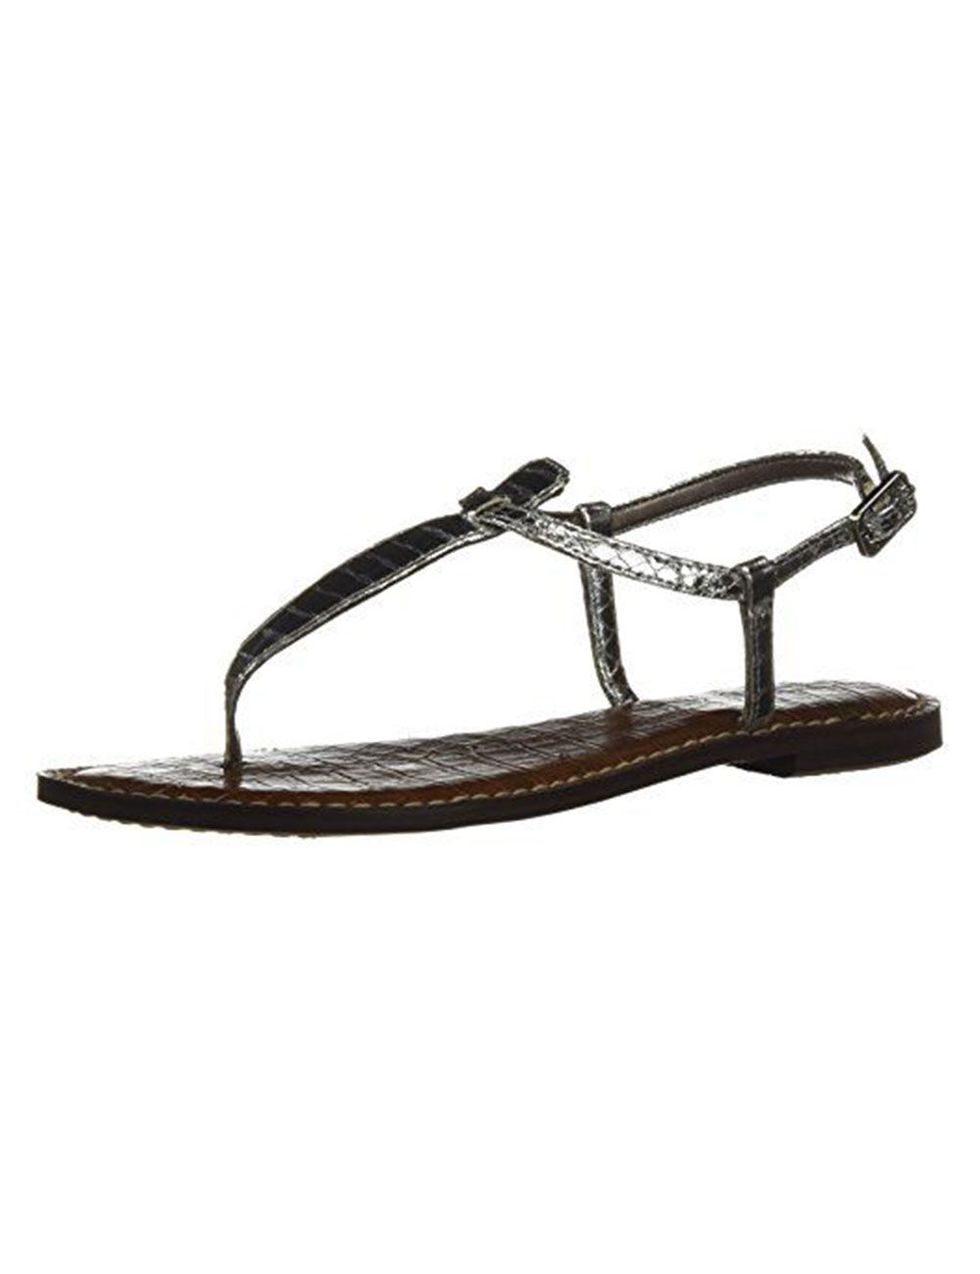 The Best Cheap Flat Sandals - Summer Sandals Under $100